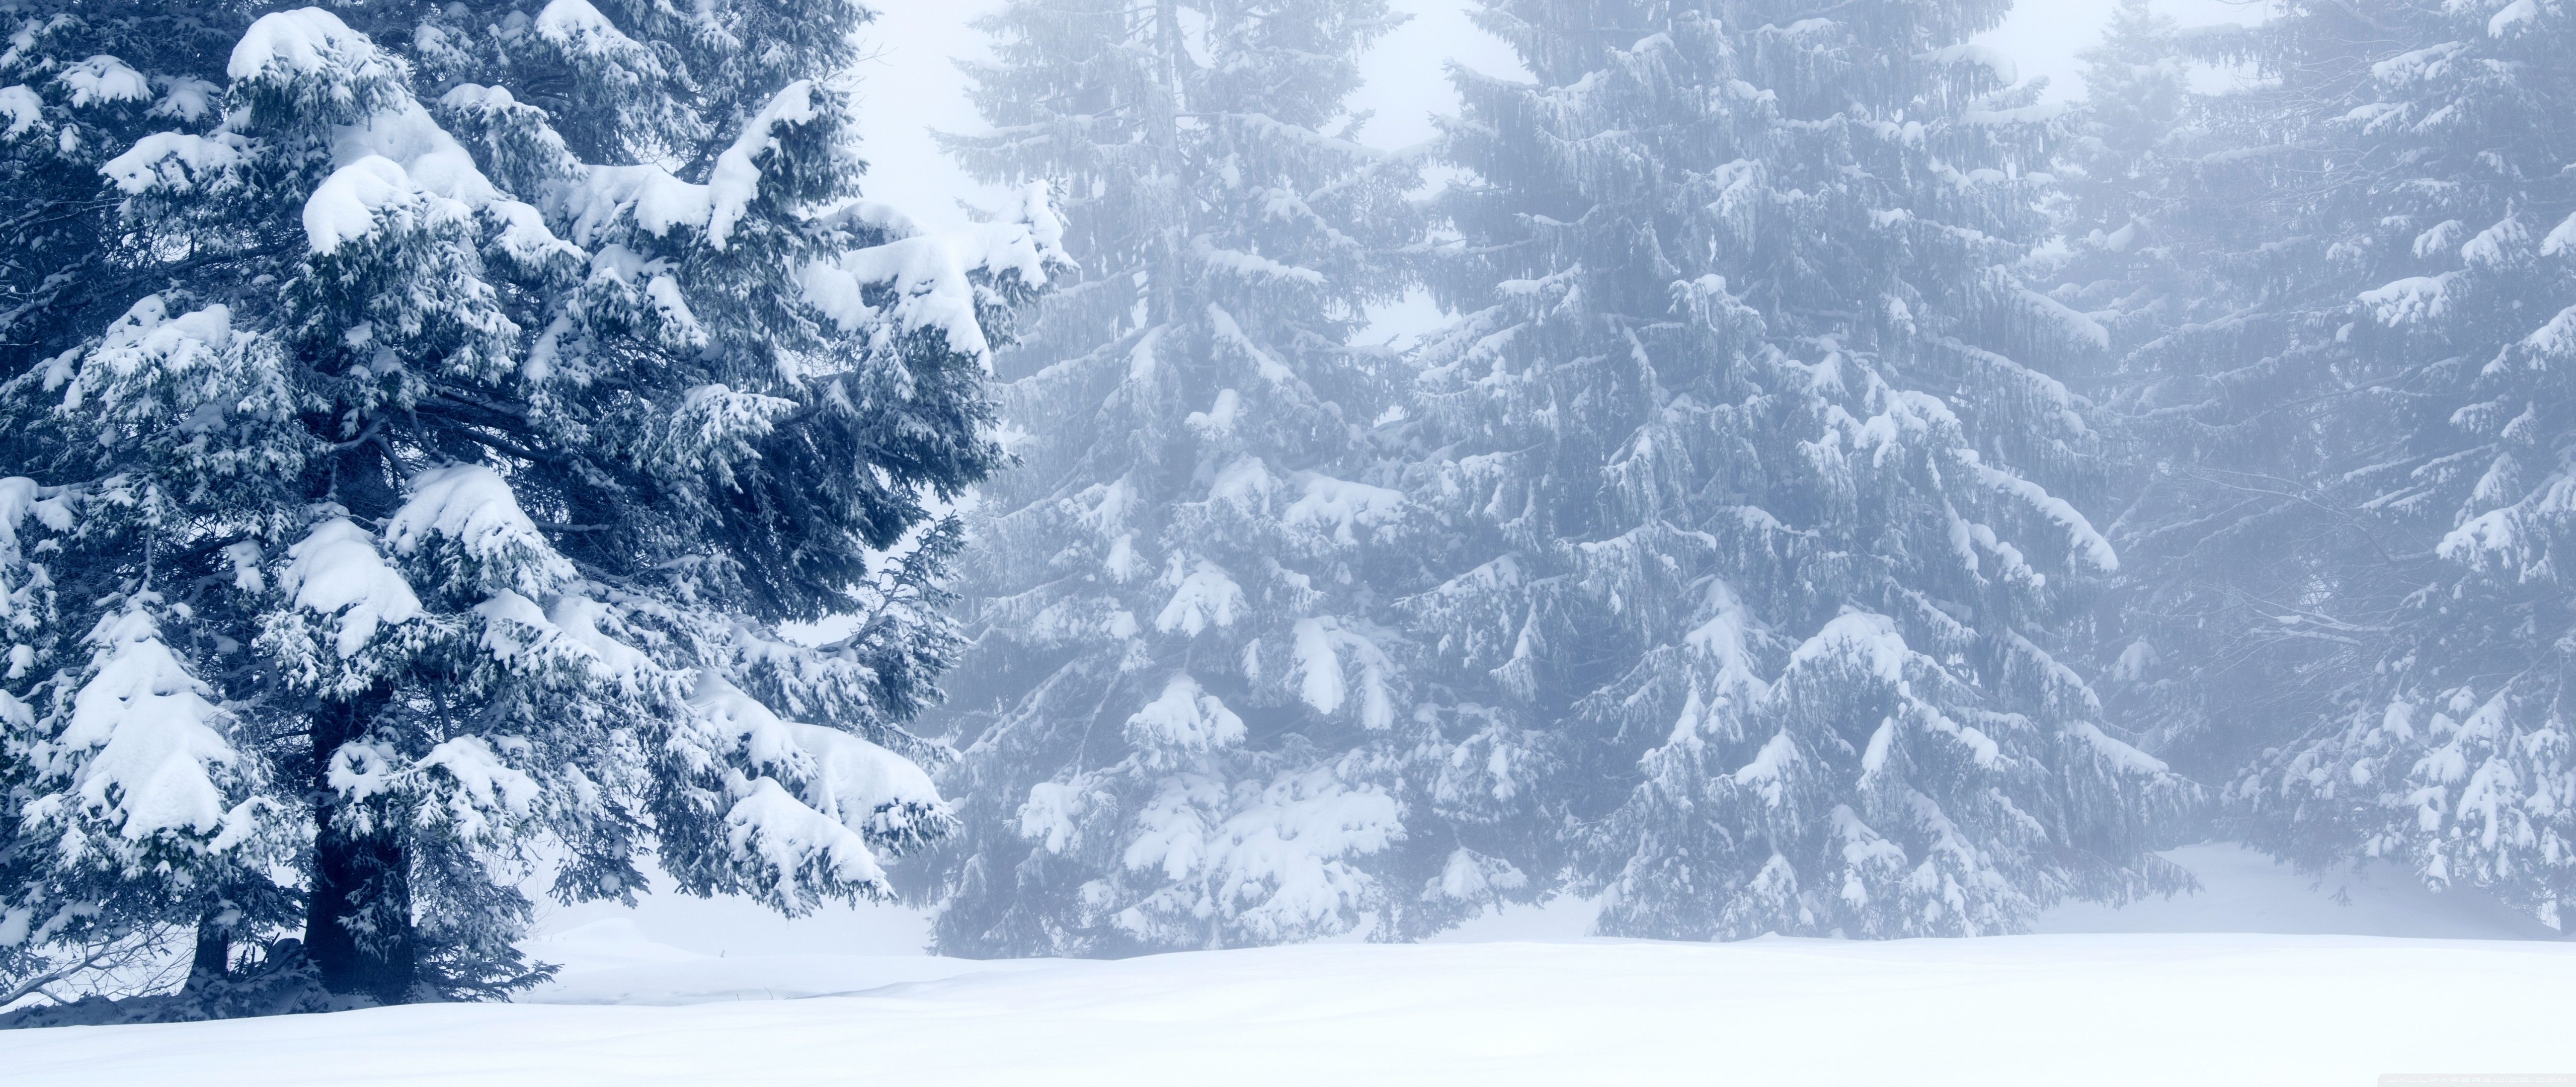 Snowy Trees, Winter Scenery Ultra HD Desktop Background Wallpaper for 4K UHD TV, Widescreen & UltraWide Desktop & Laptop, Tablet